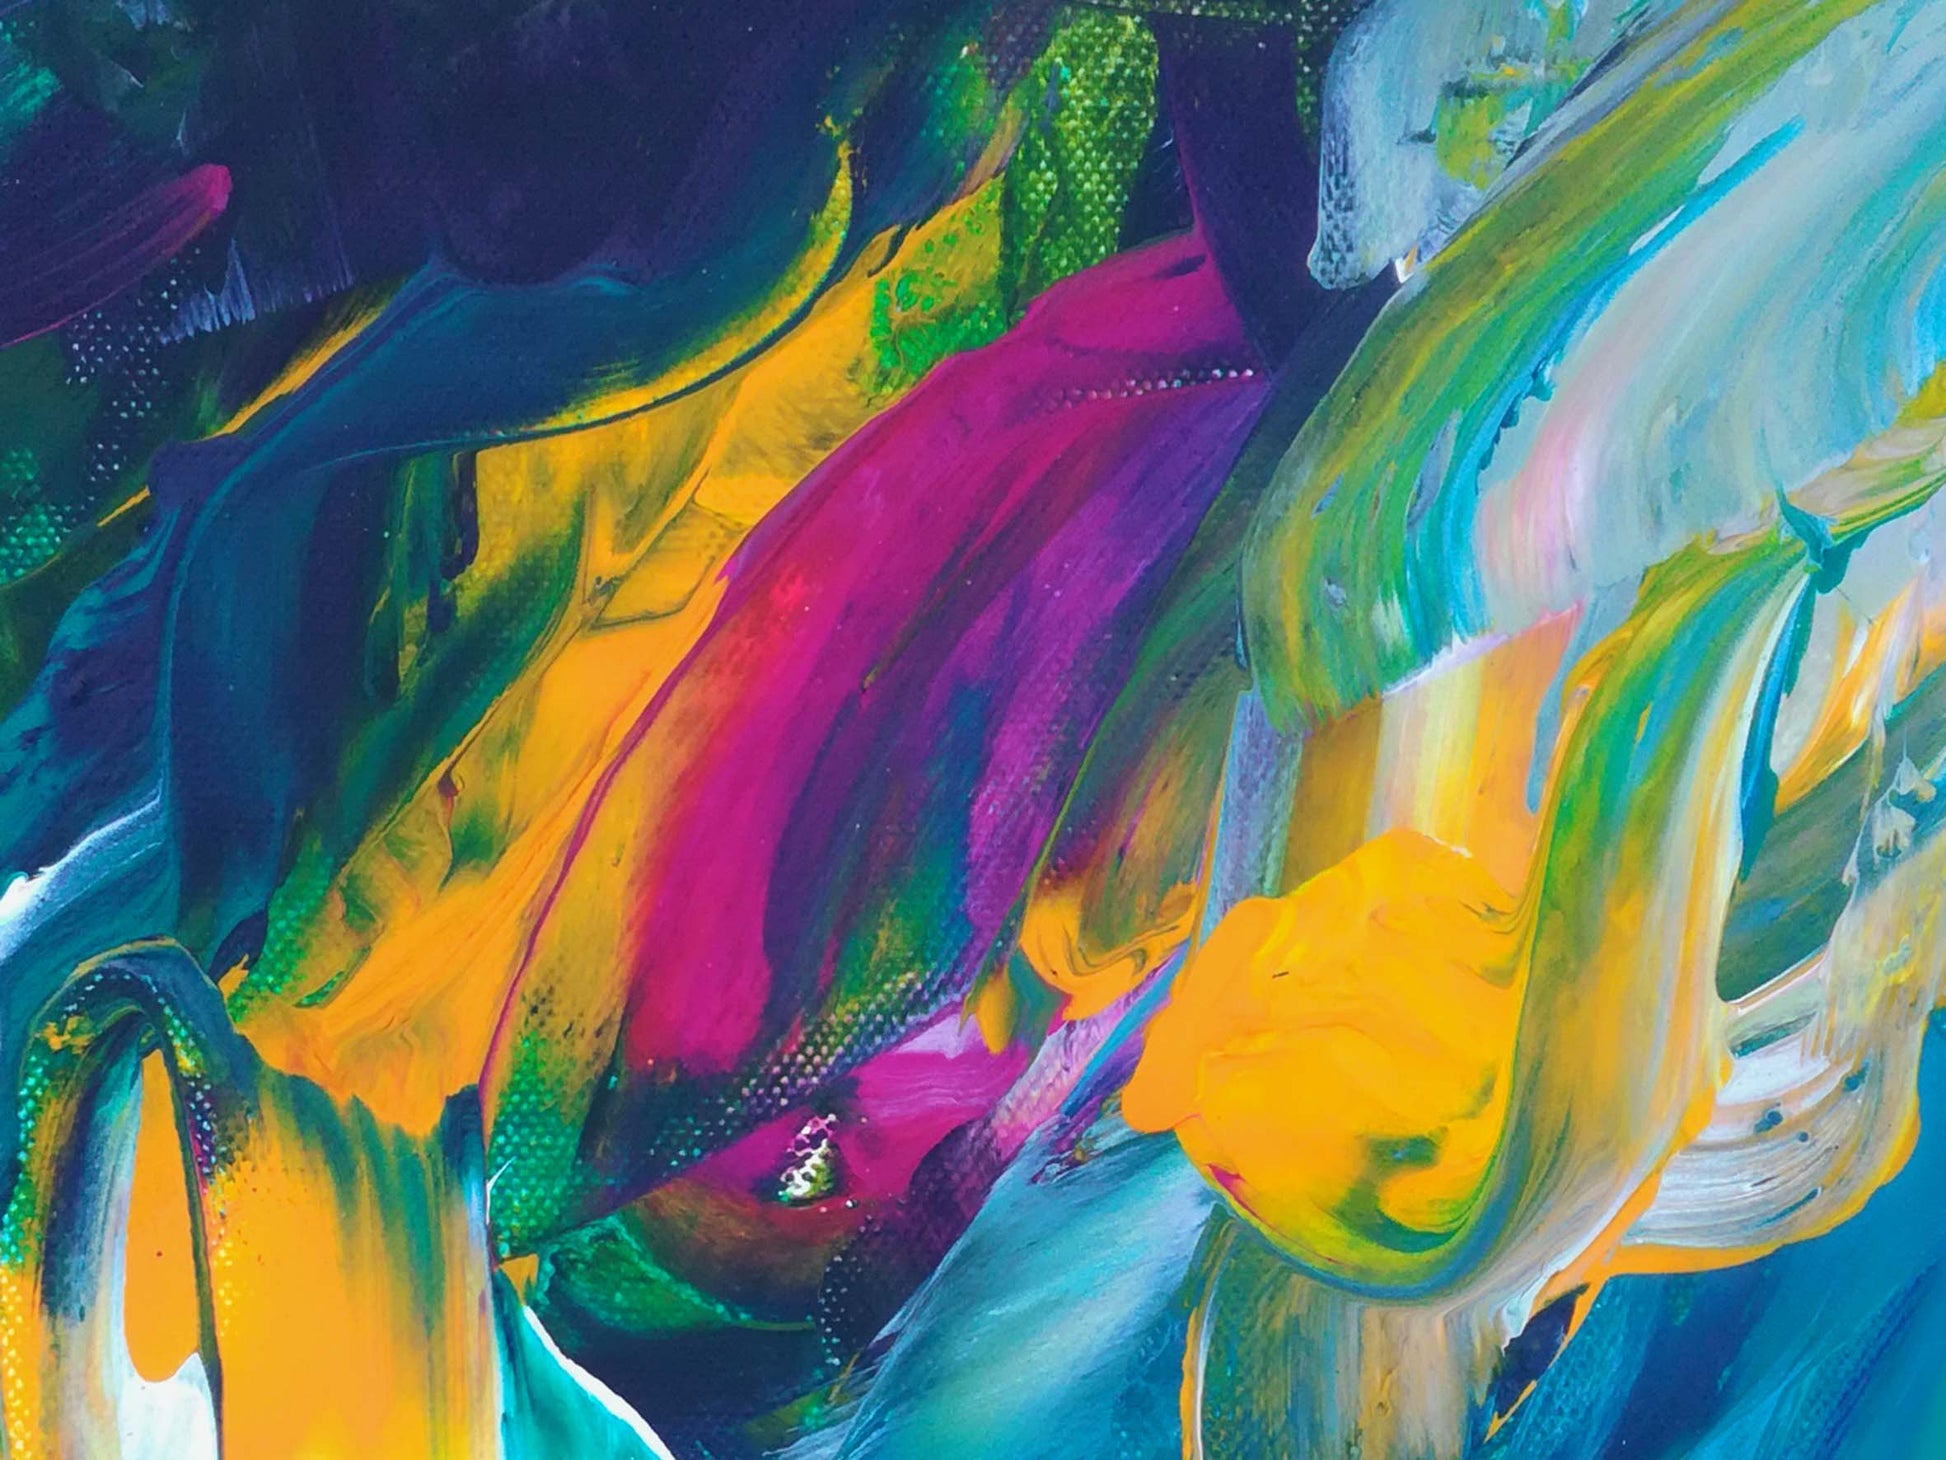 Motiv Kuscheldecke DSCHUNGLE Größe: 200 x 150 cm in leuchtenden Farben: Pink, Kobalt Blau, Sonnengelb, Grün